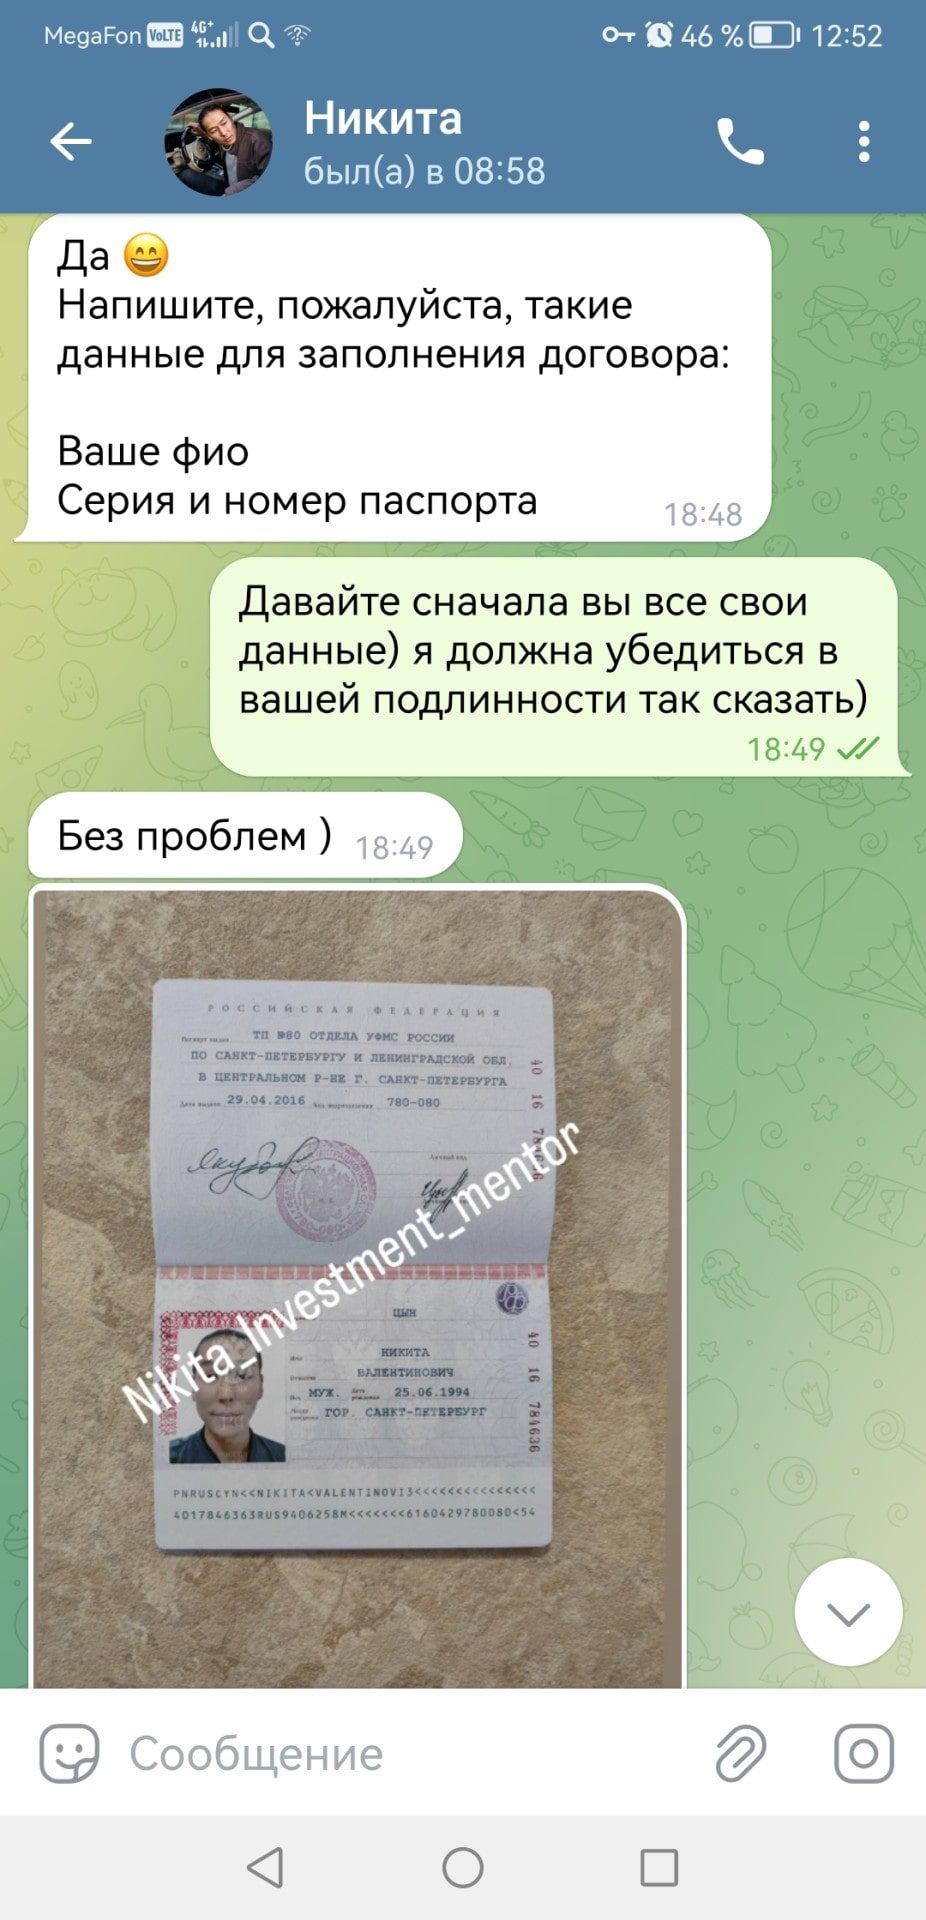 Цын Никита Валентинович телеграмм